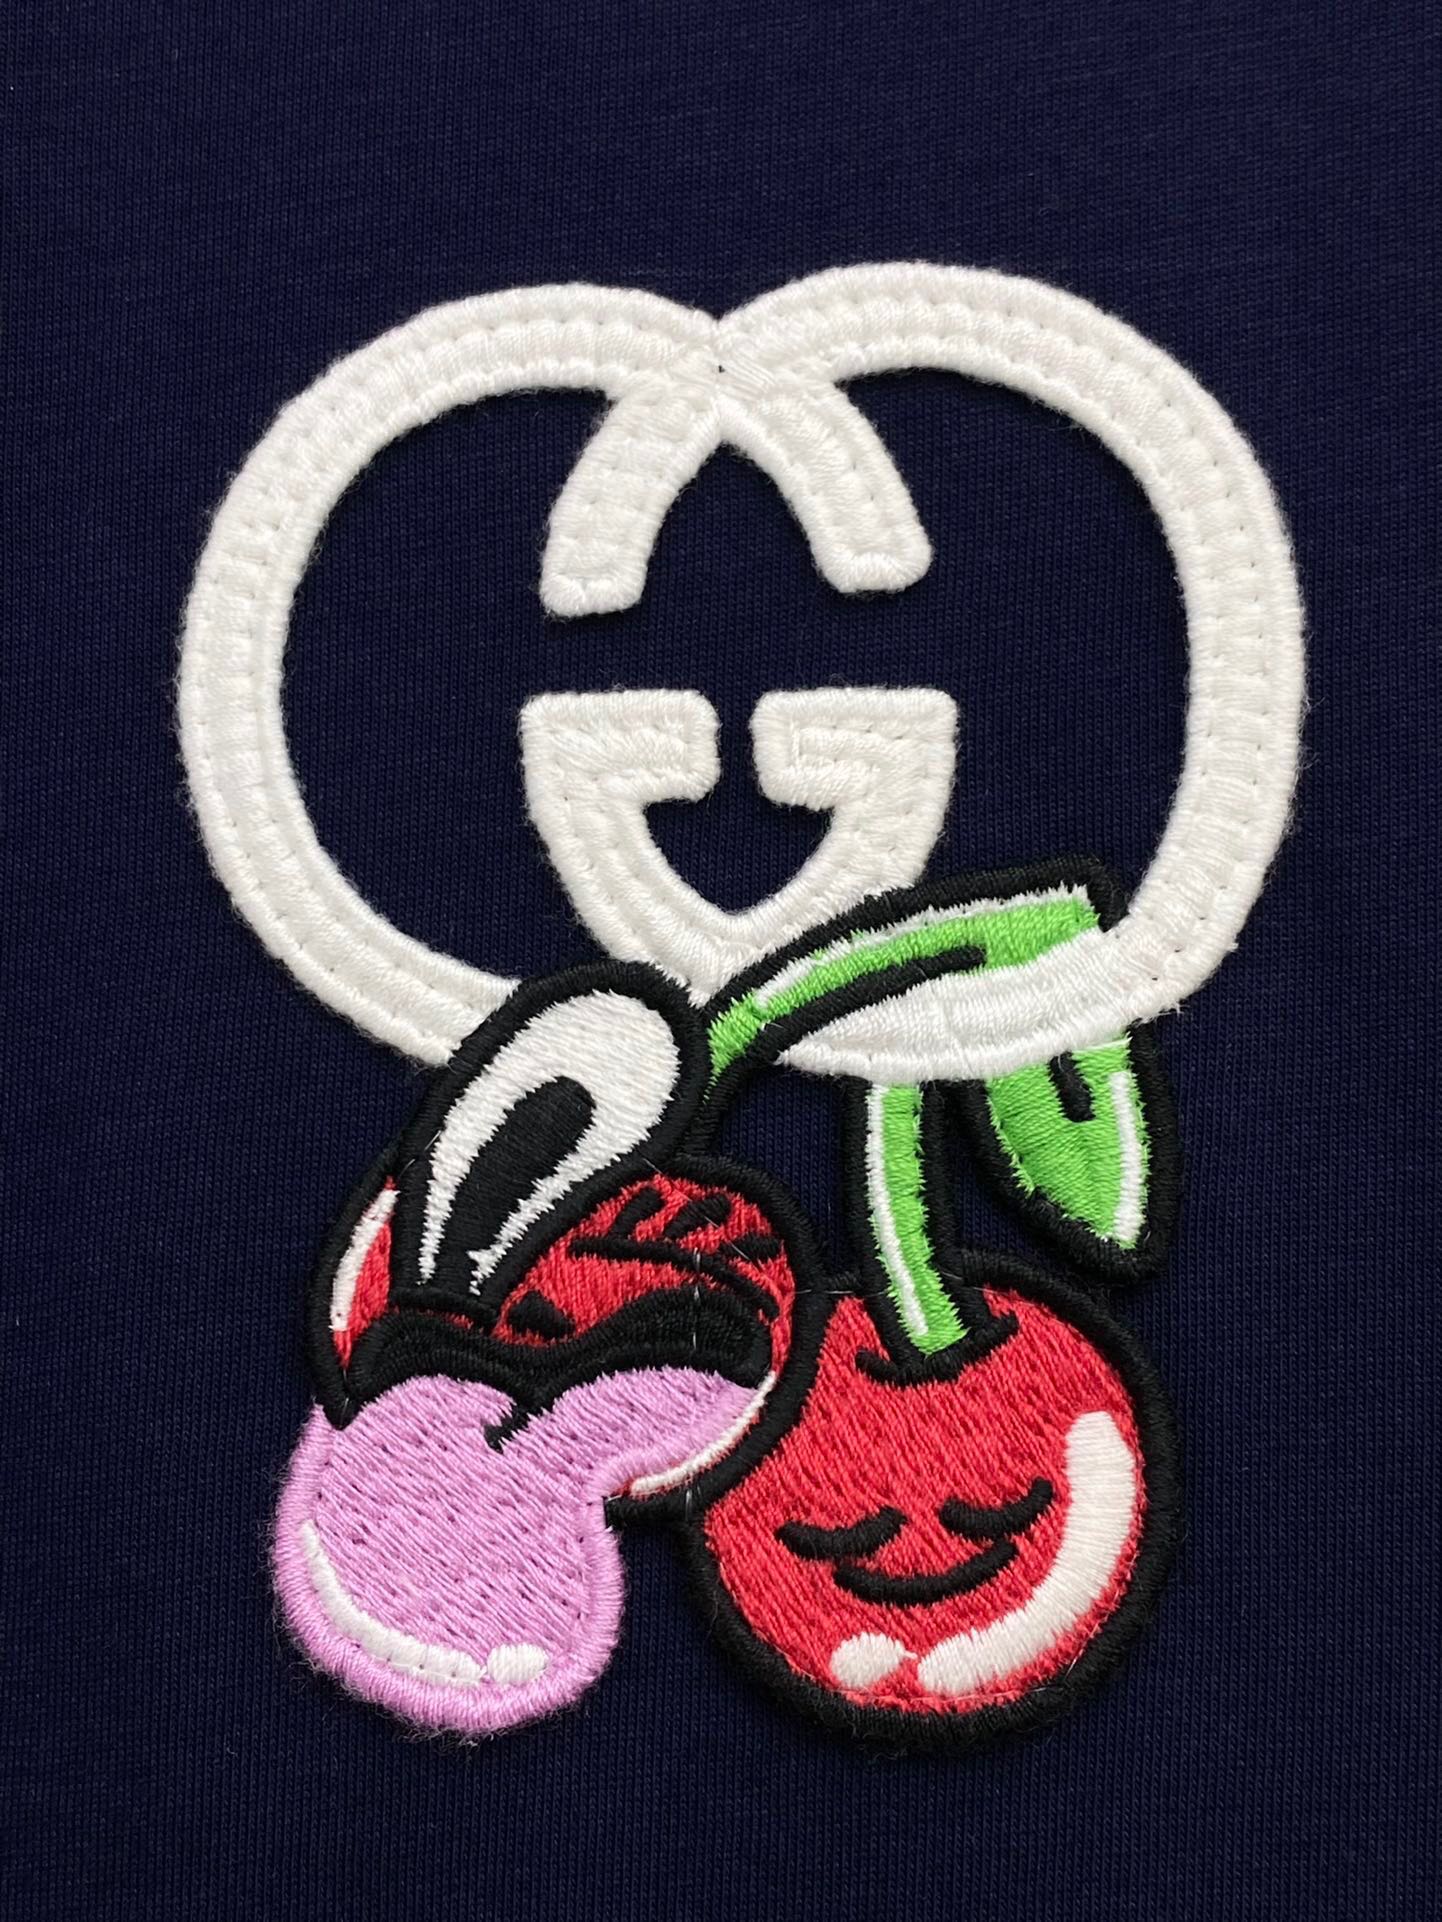 独家首发高端原单品质GU*CI24/新款刺绣樱桃logo短袖T恤休闲风格服饰尽展率性风范T恤采用落肩设计